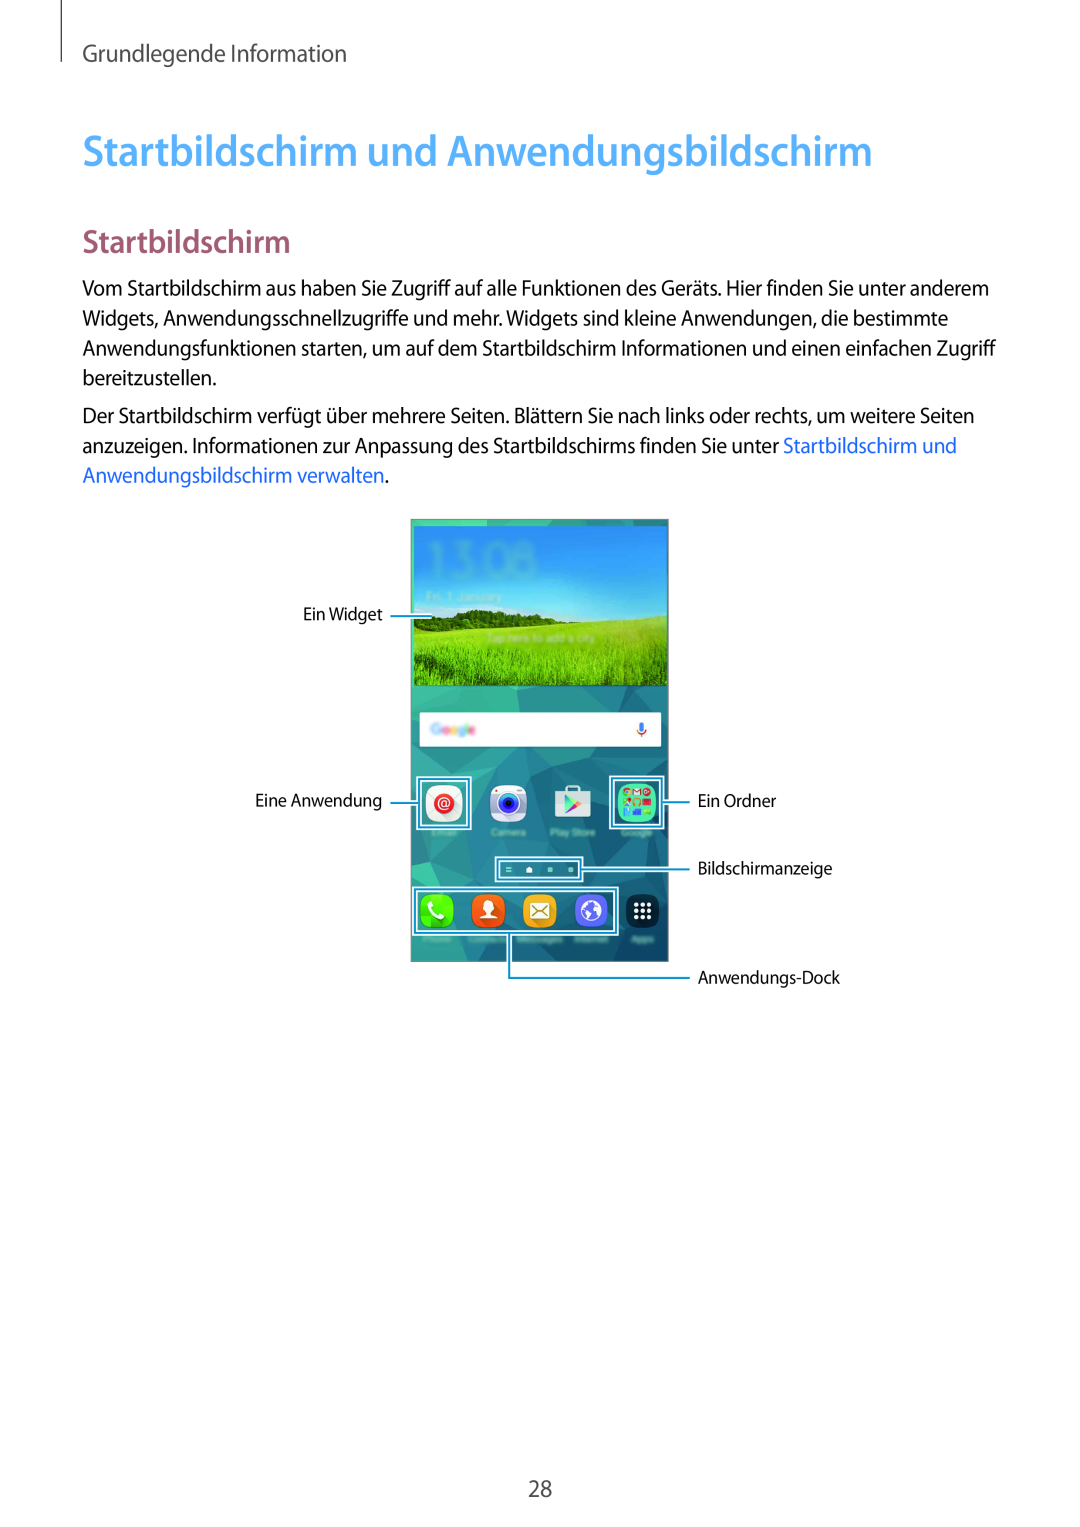 Samsung SM-G901FZWABAL, SM-G901FZKACOS, SM-G901FZDABAL Startbildschirm und Anwendungsbildschirm, Grundlegende Information 